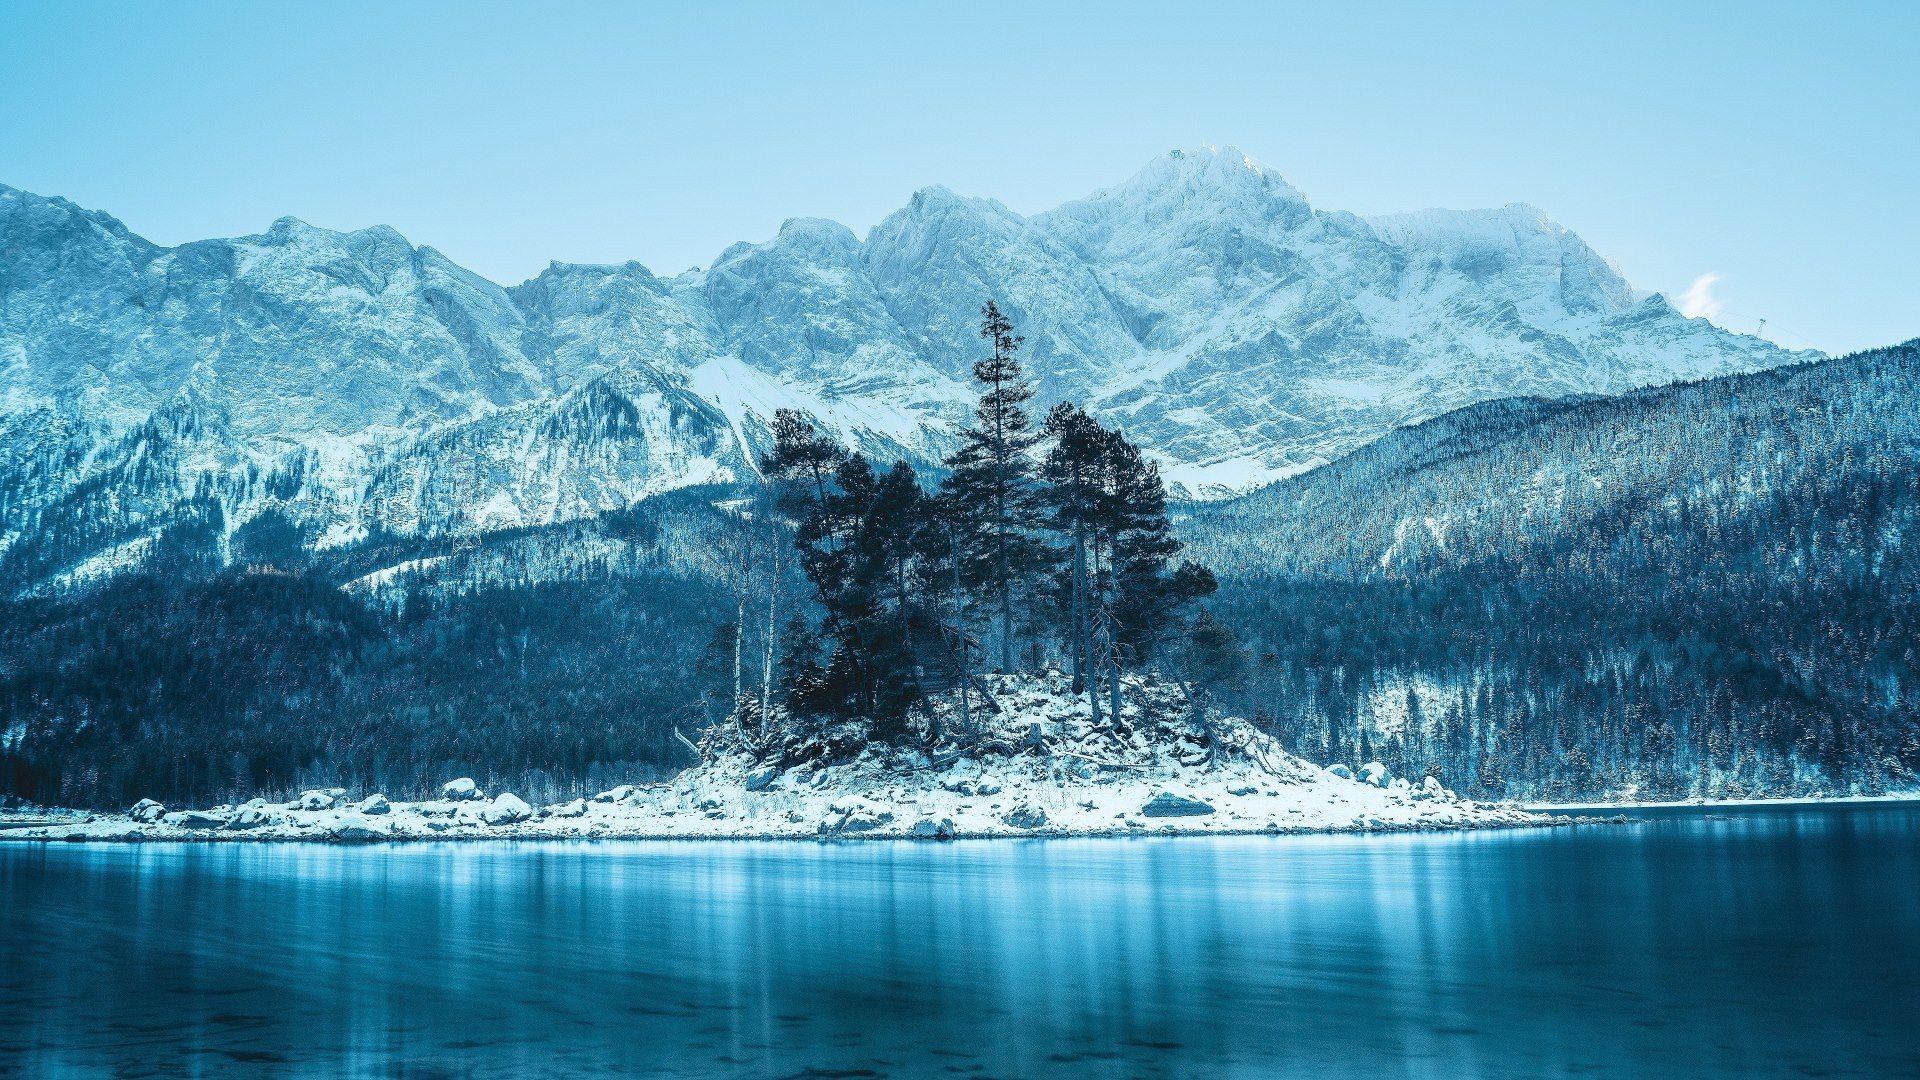  Die Schönsten Hintergrundbild 1920x1080. Hintergrundbilder Berge Alpen Kostenlos